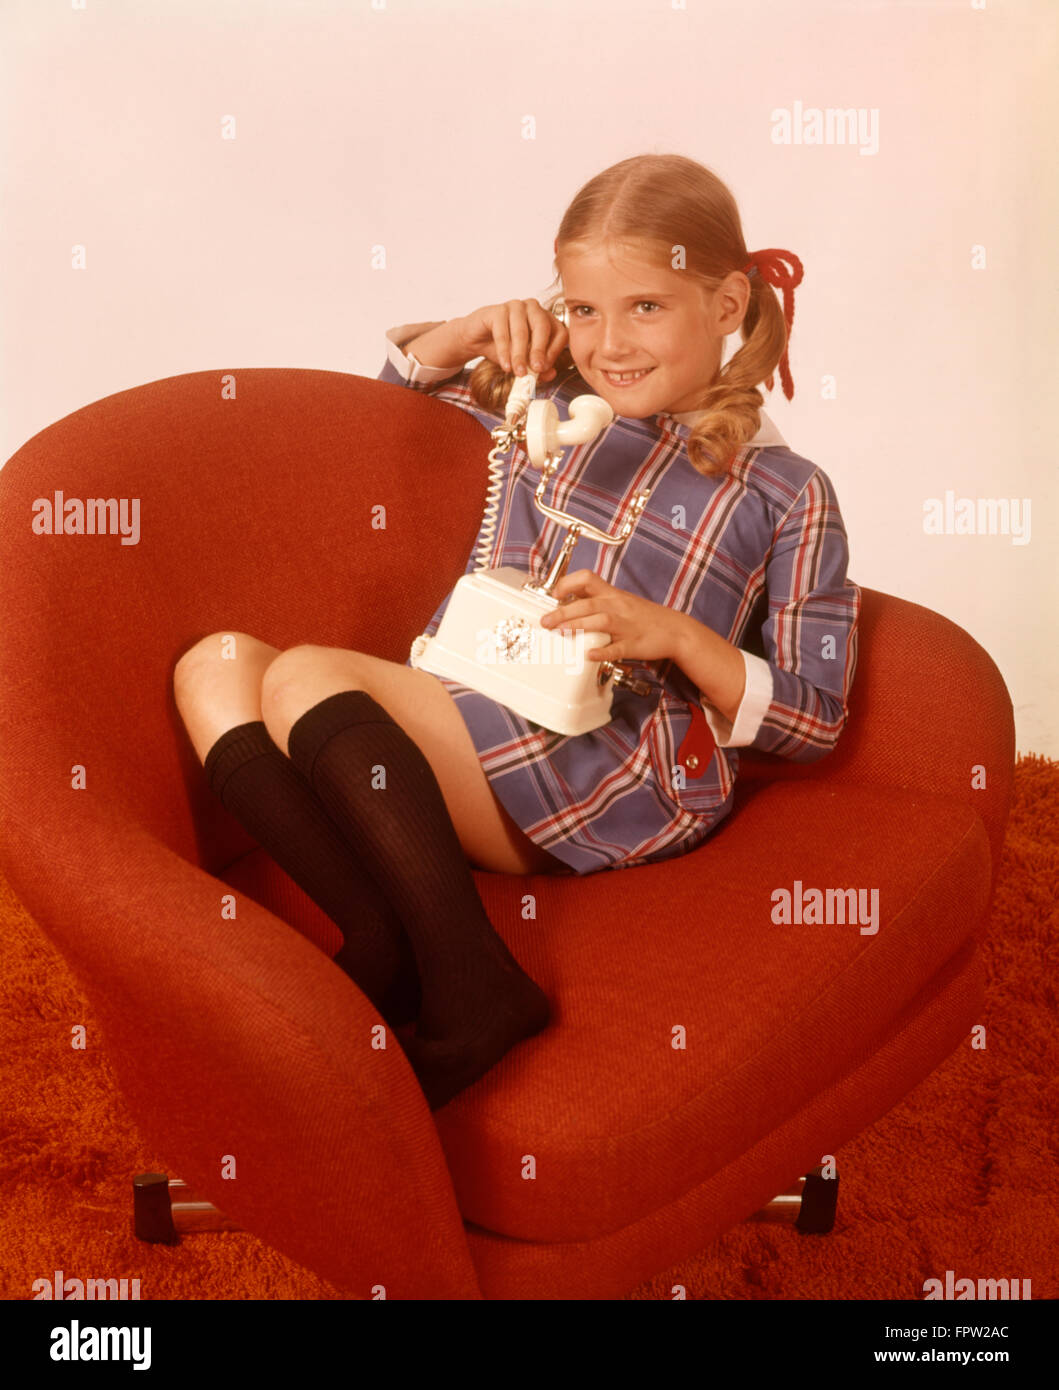 1970 SMILING GIRL CHAUSSETTES robe à carreaux rouge PARLE PRÉSIDENT DE SÉANCE Téléphone Téléphone Banque D'Images